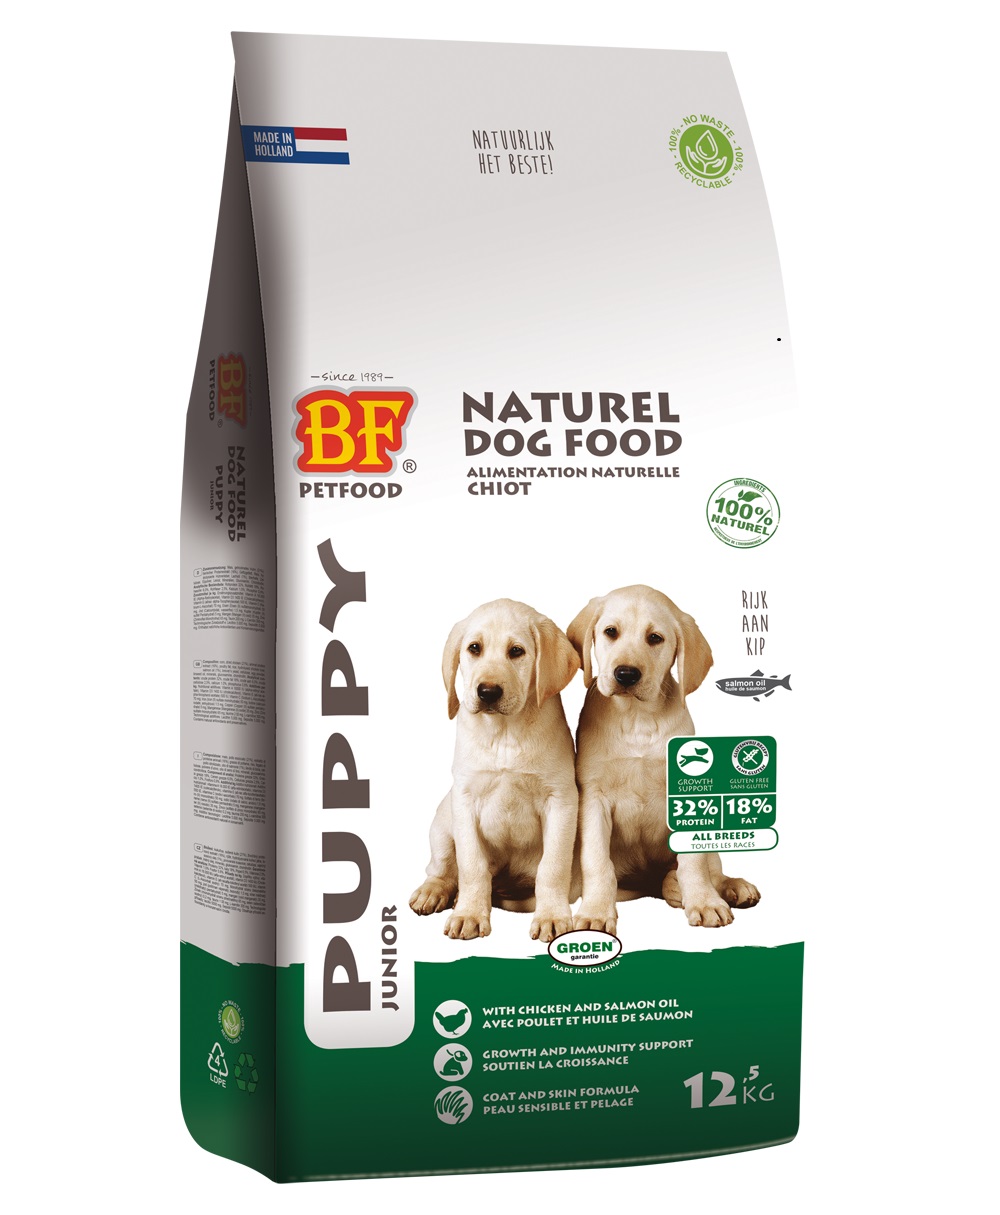 Biofood Puppy kg - 4 Pets Vachtverzorging en voer voor honden en katten